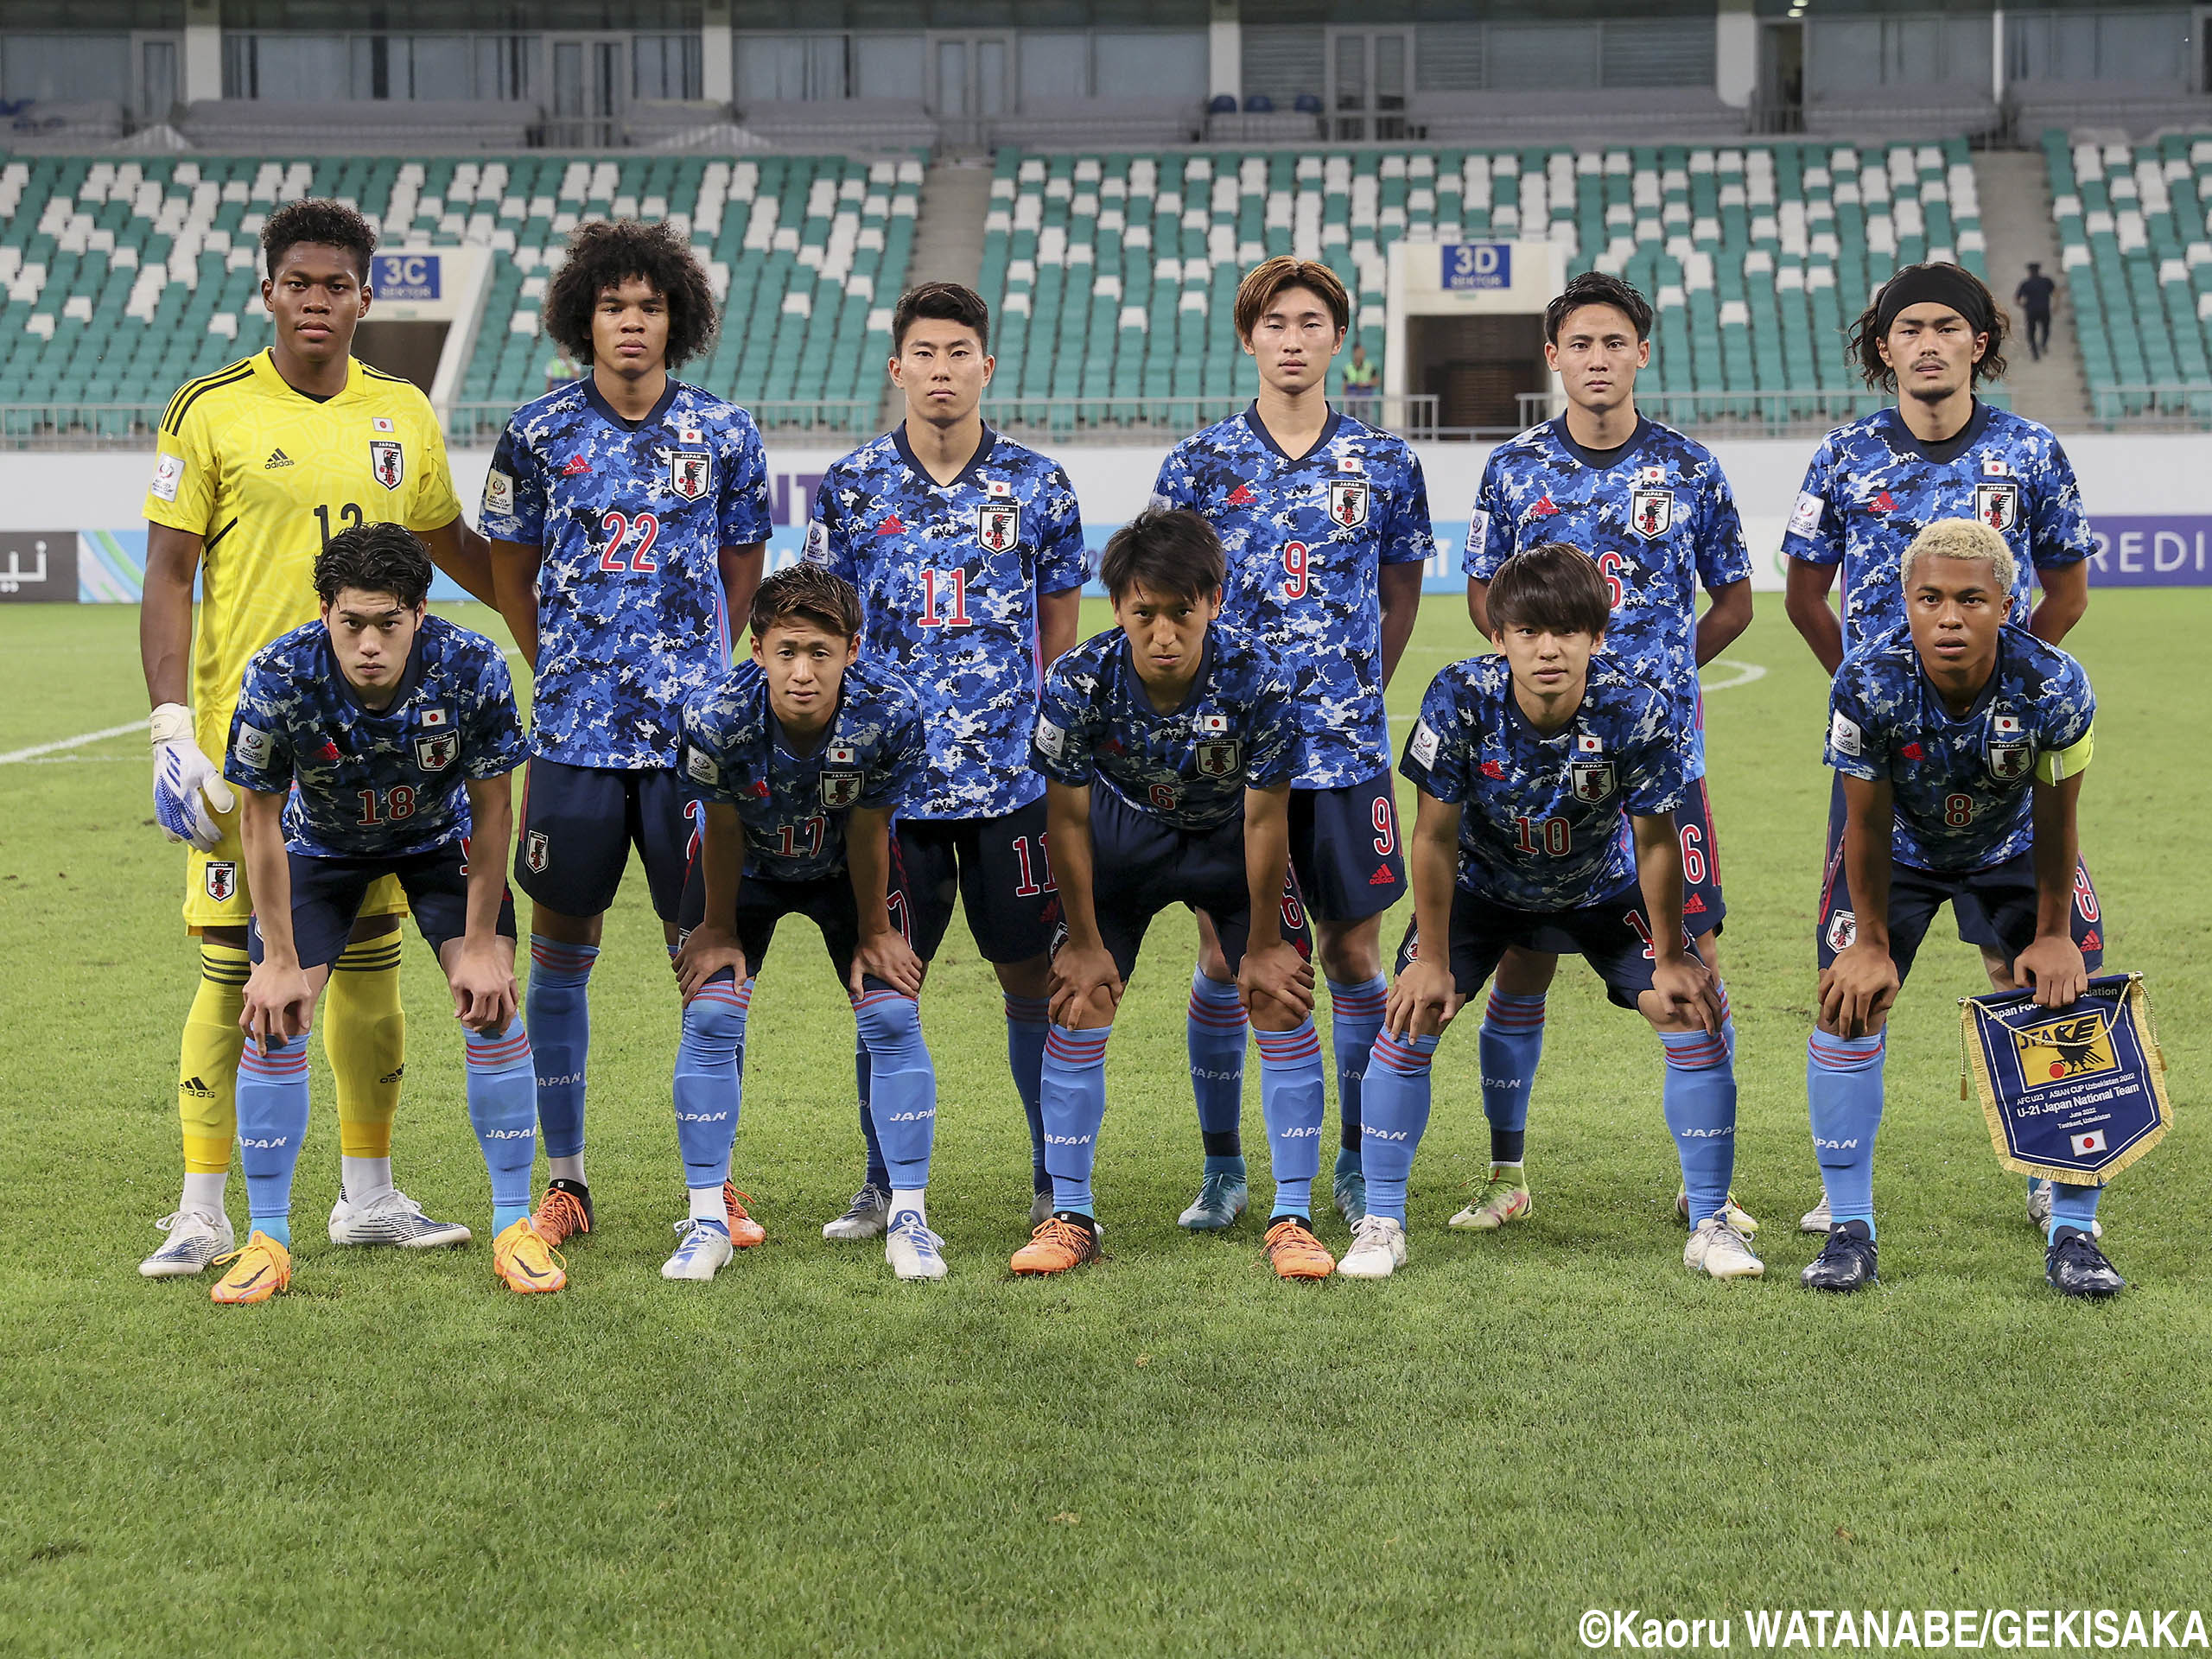 “パリ五輪世代”対決! U-21日本代表は開催国のウズベキスタンに屈し、決勝進出ならず(31枚)